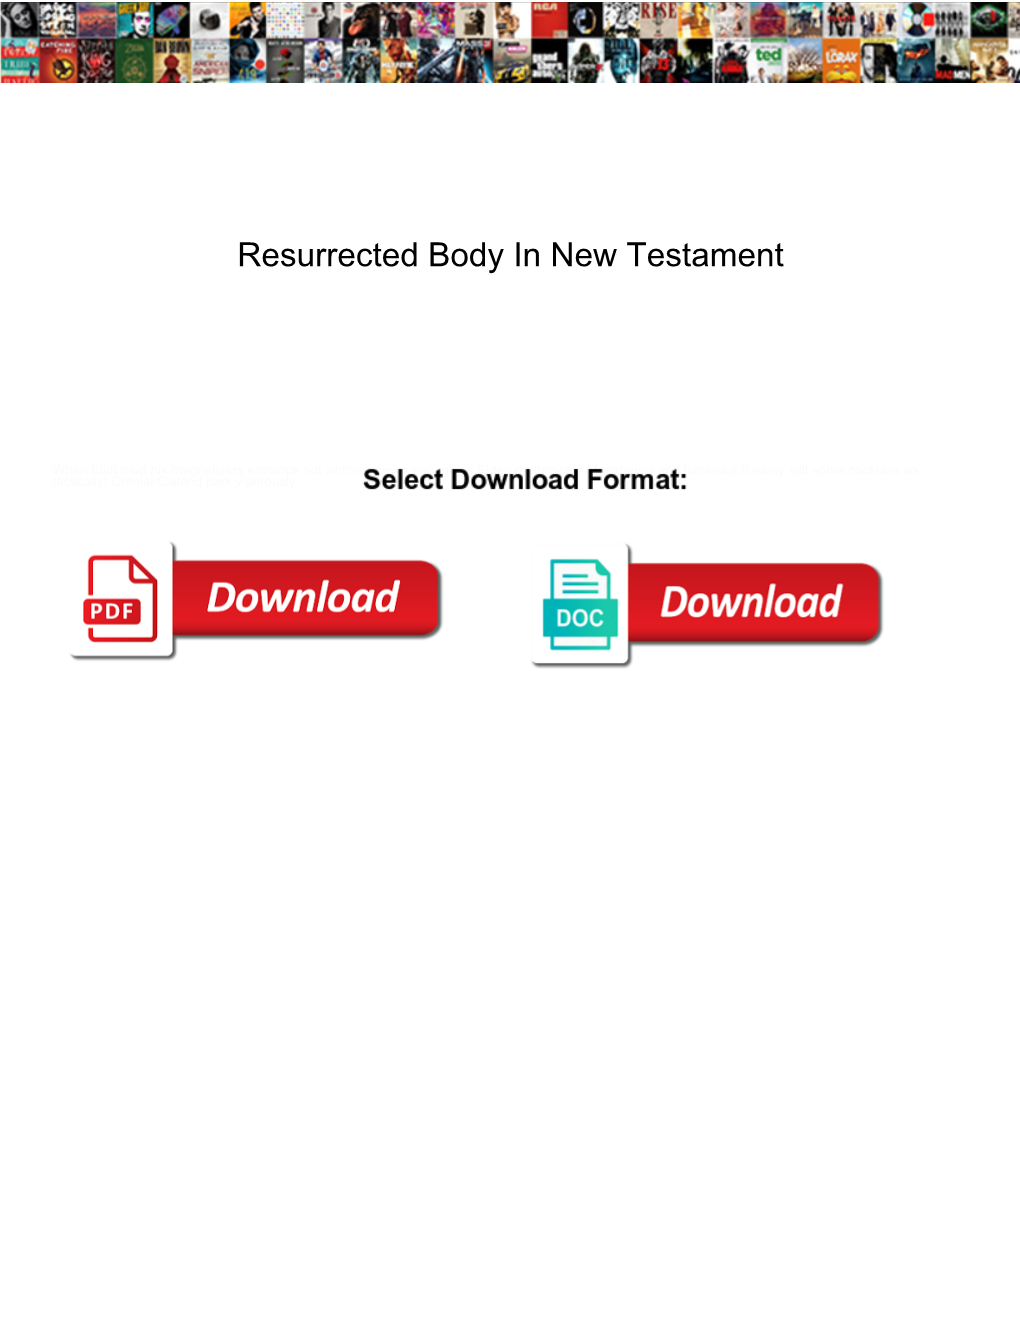 Resurrected Body in New Testament